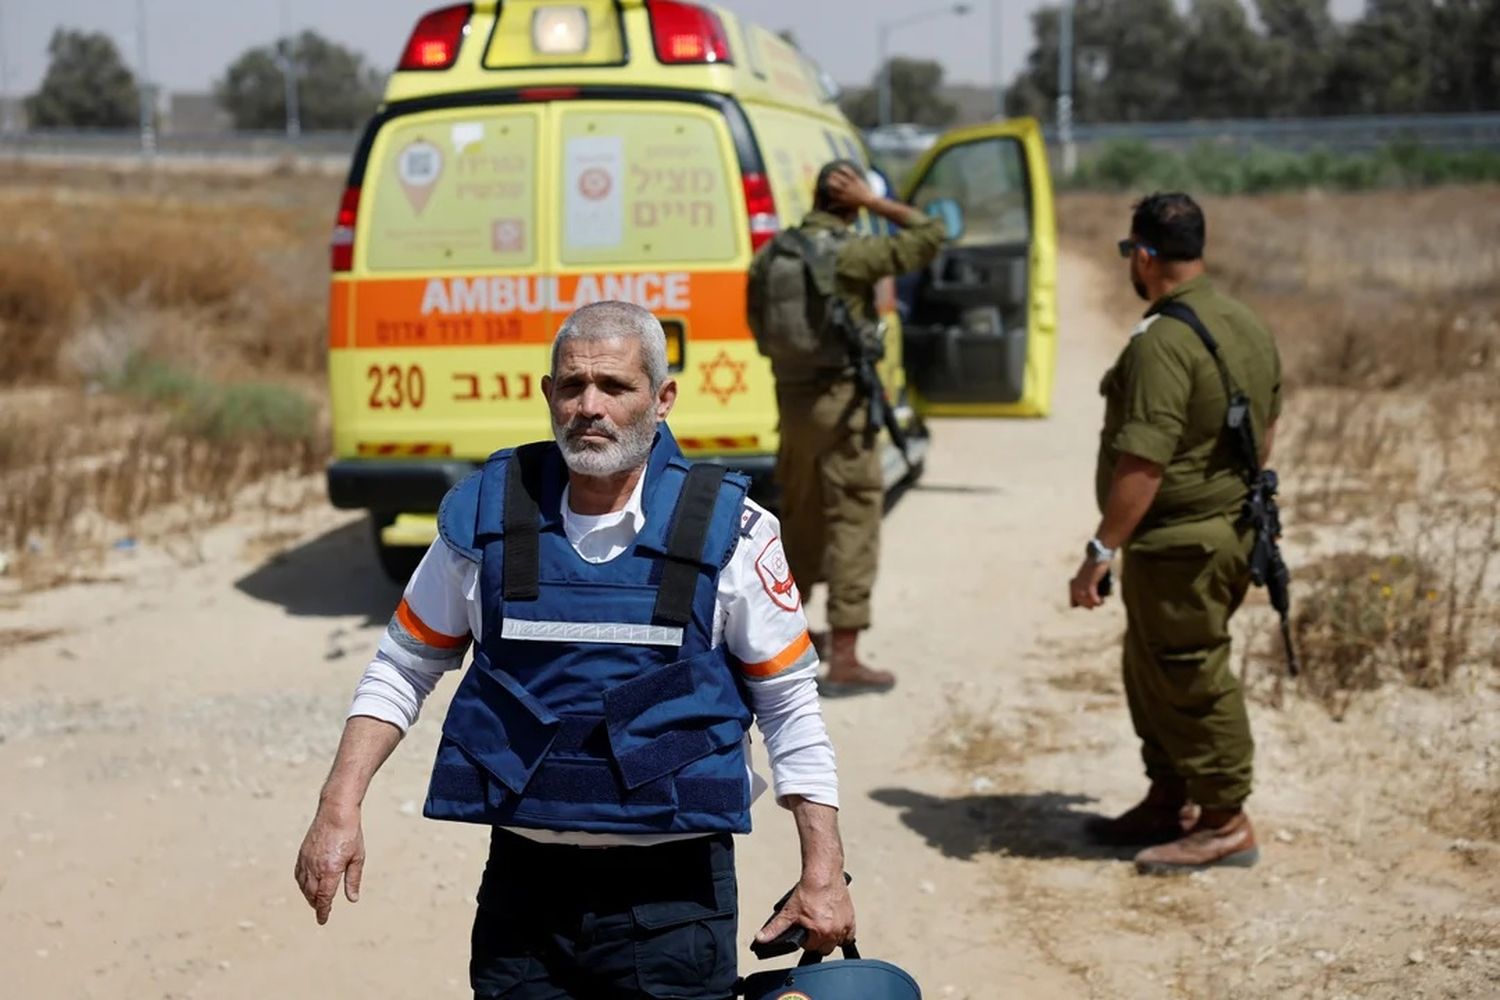 Un médico camina junto a varios soldados israelíes cerca de una ambulancia después de un ataque mortal.